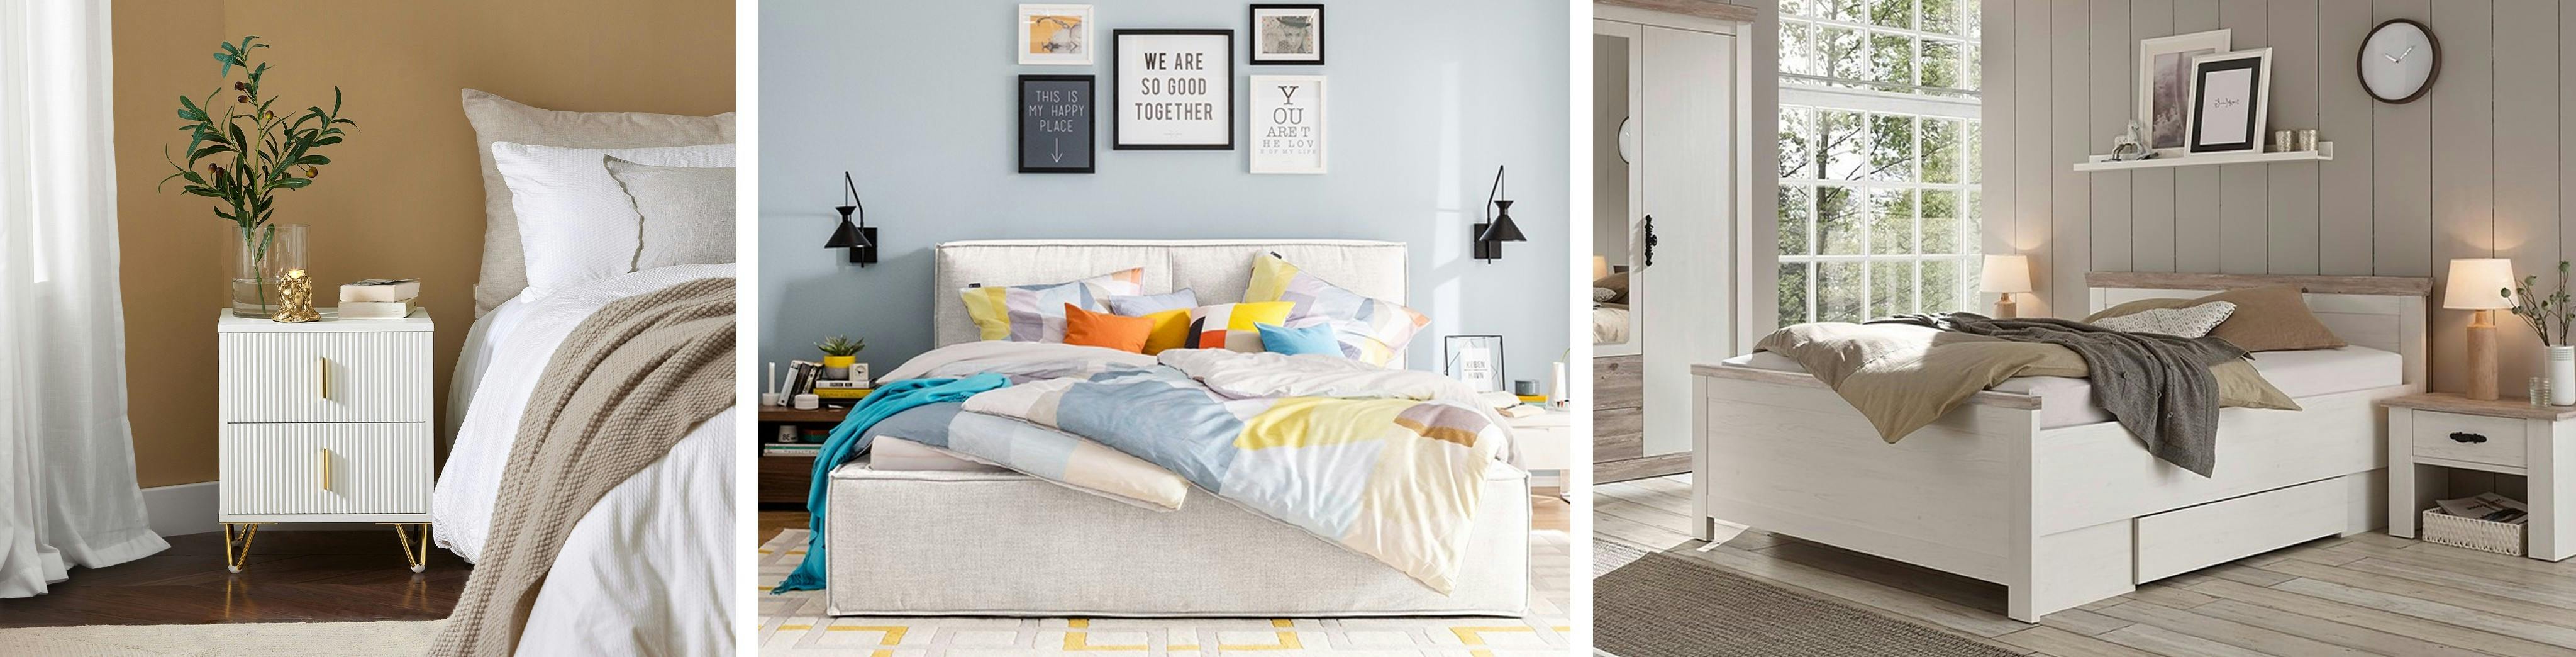 Bett mit eleganter Nachtkommode, Doppelbett mit bunter Bettwäsche und weißes Bett mit Bettkasten (Online-Shop: home24).